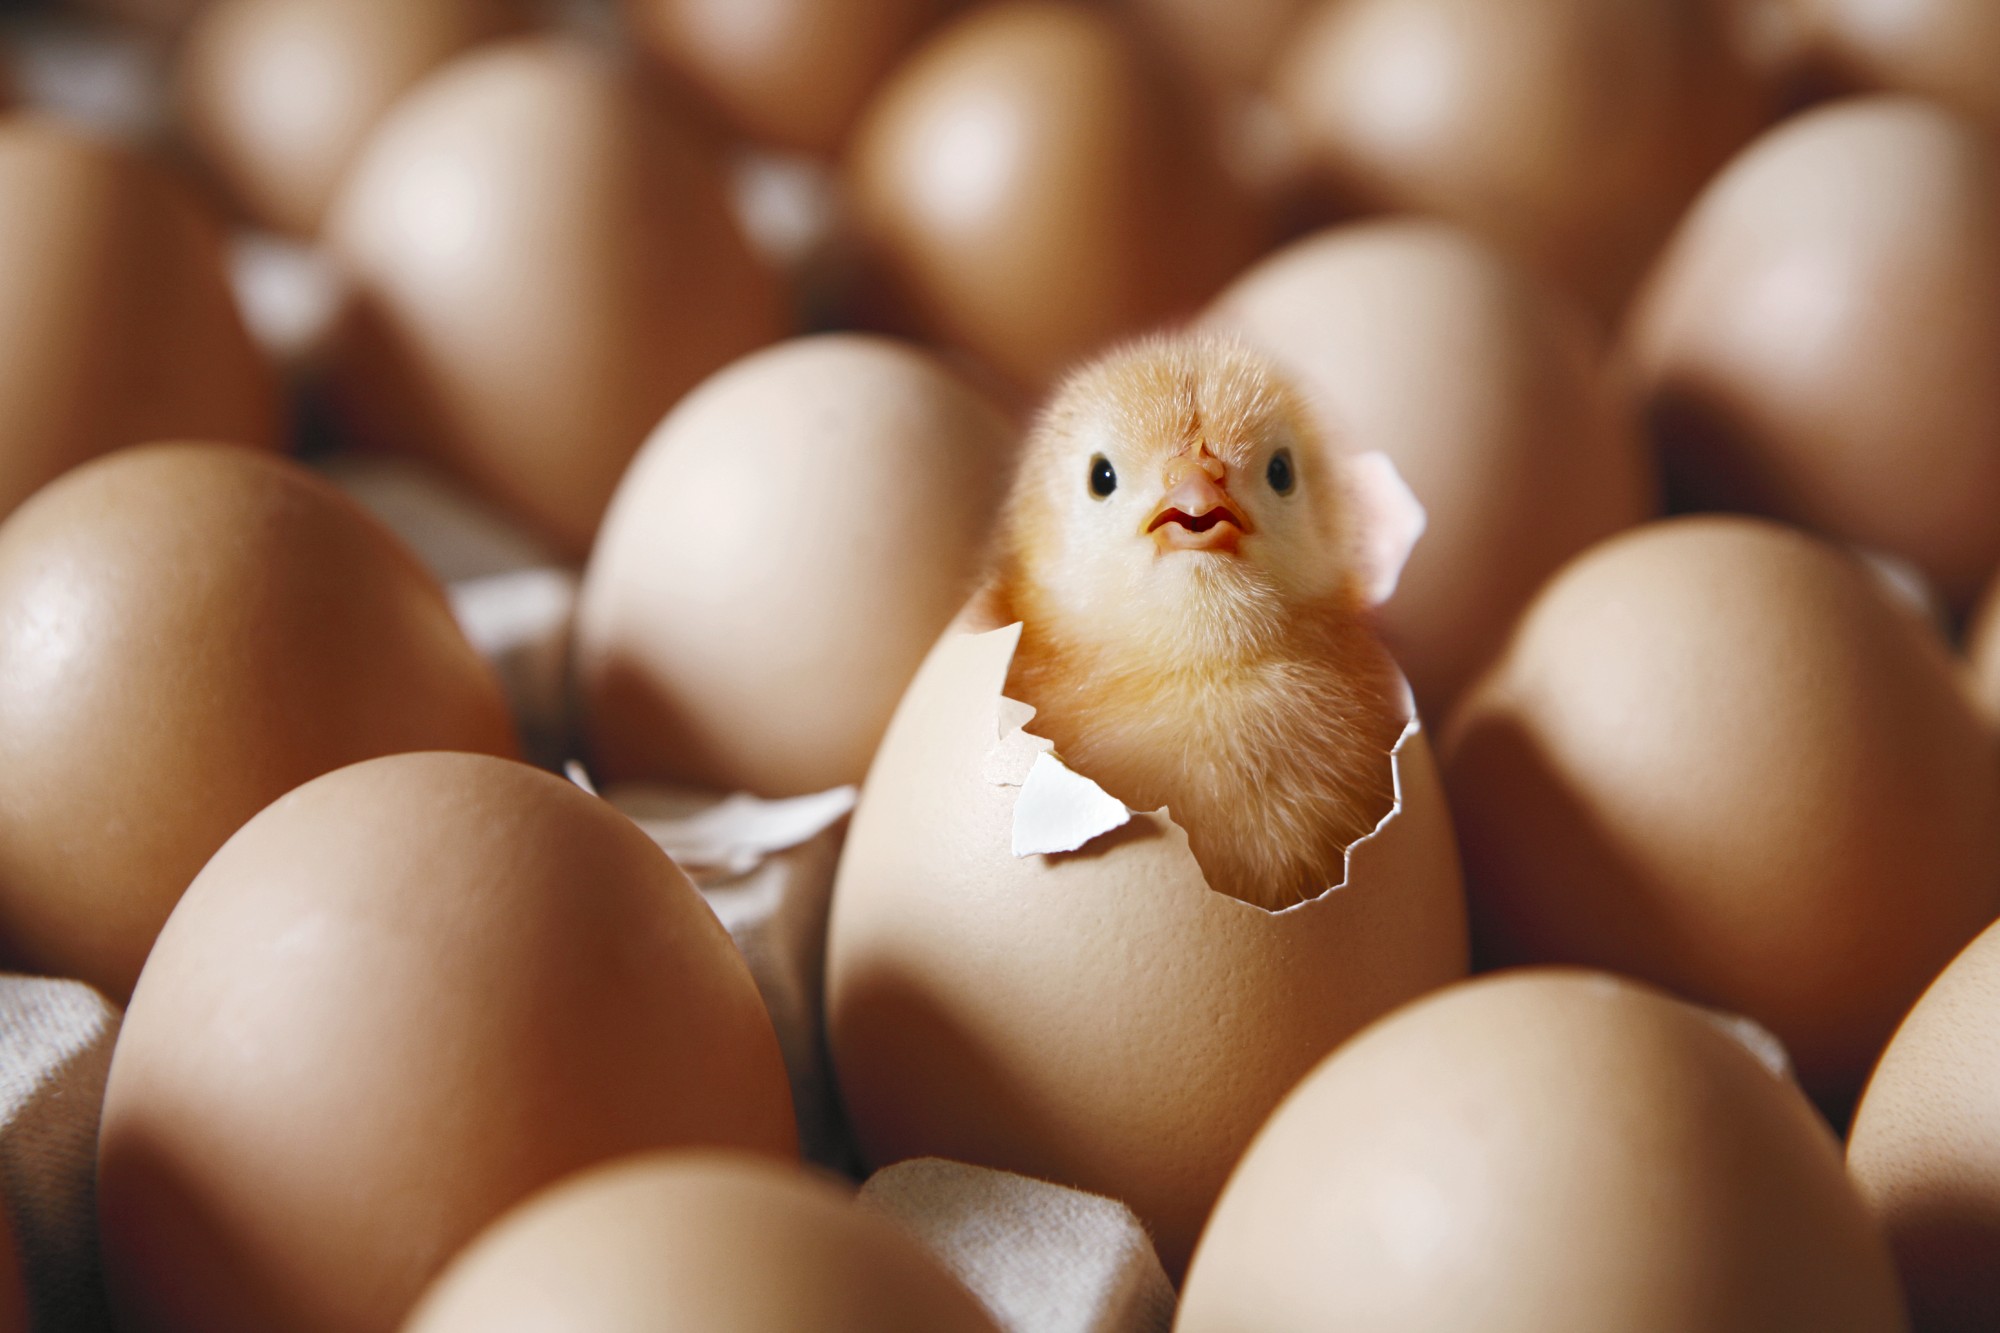 Ovo de 'galinha feliz'? Conheça os diferentes tipos de ovos - Economia -  Estado de Minas